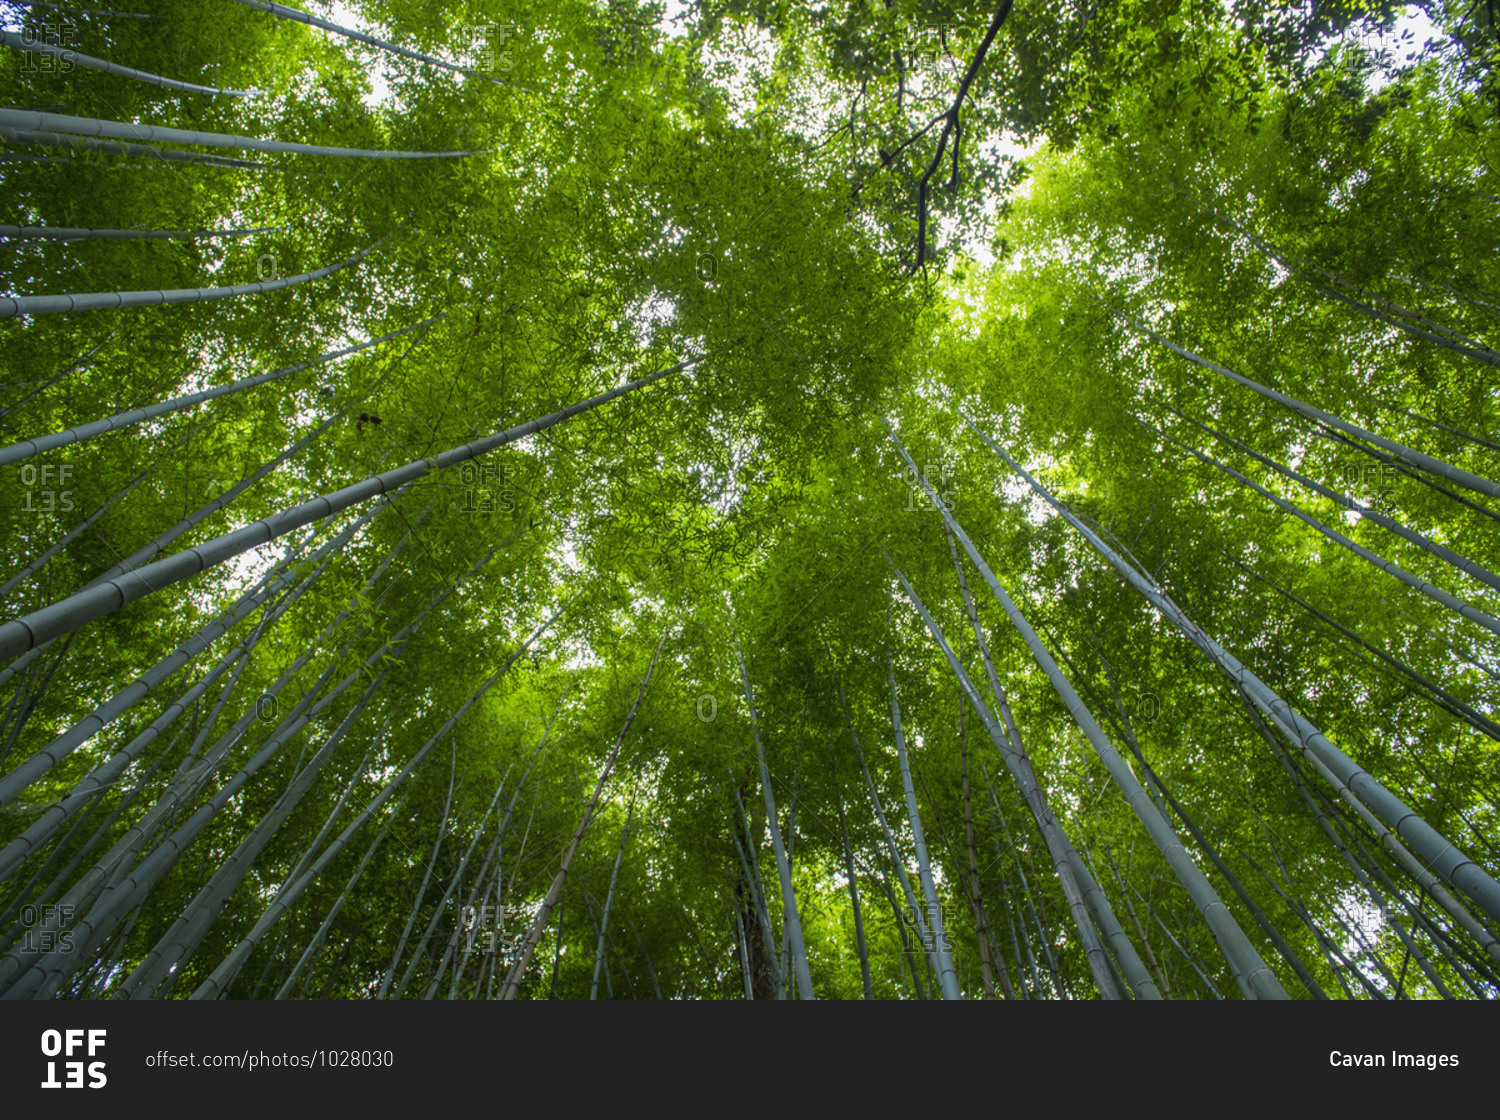 Looking up at bamboo forest at Arashiyama Bamboo Groove